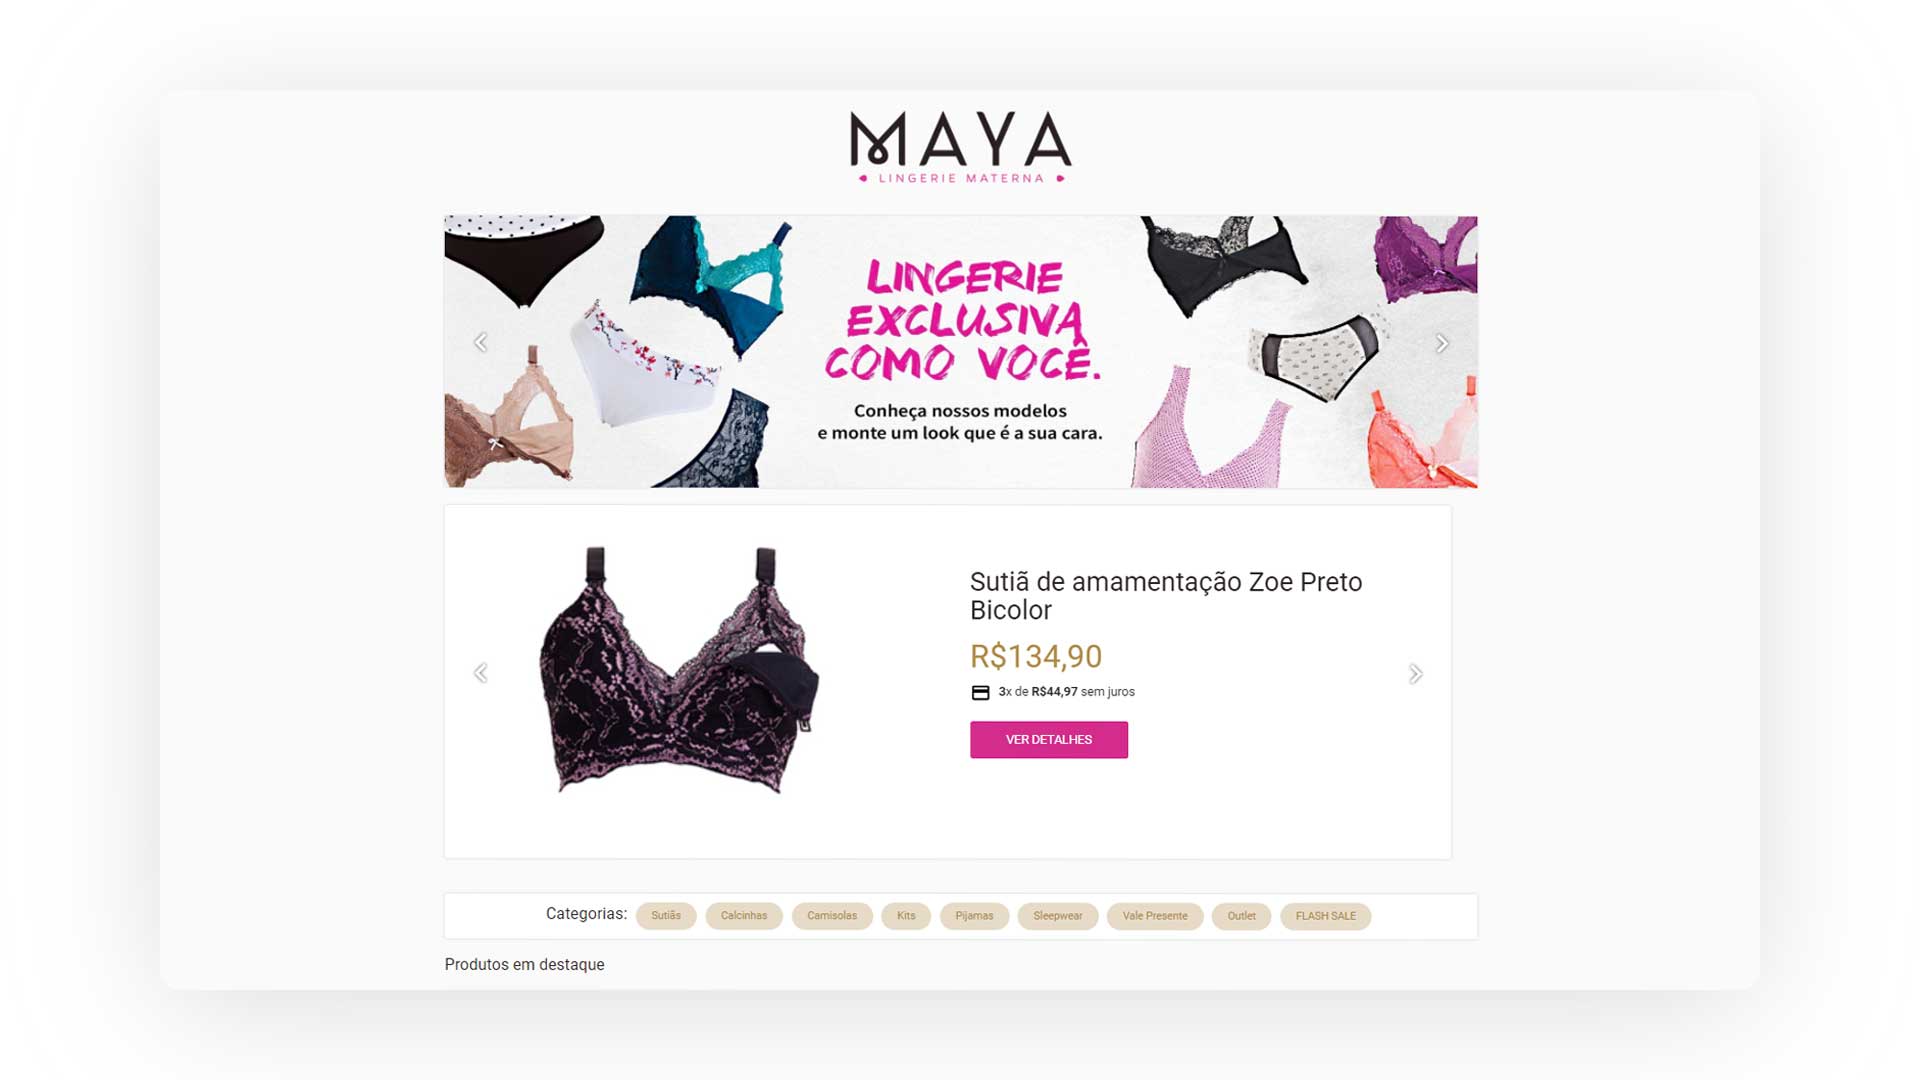 Imagem de exemplo da loja Maya Lingerie para mostrar como montar uma loja de lingerie